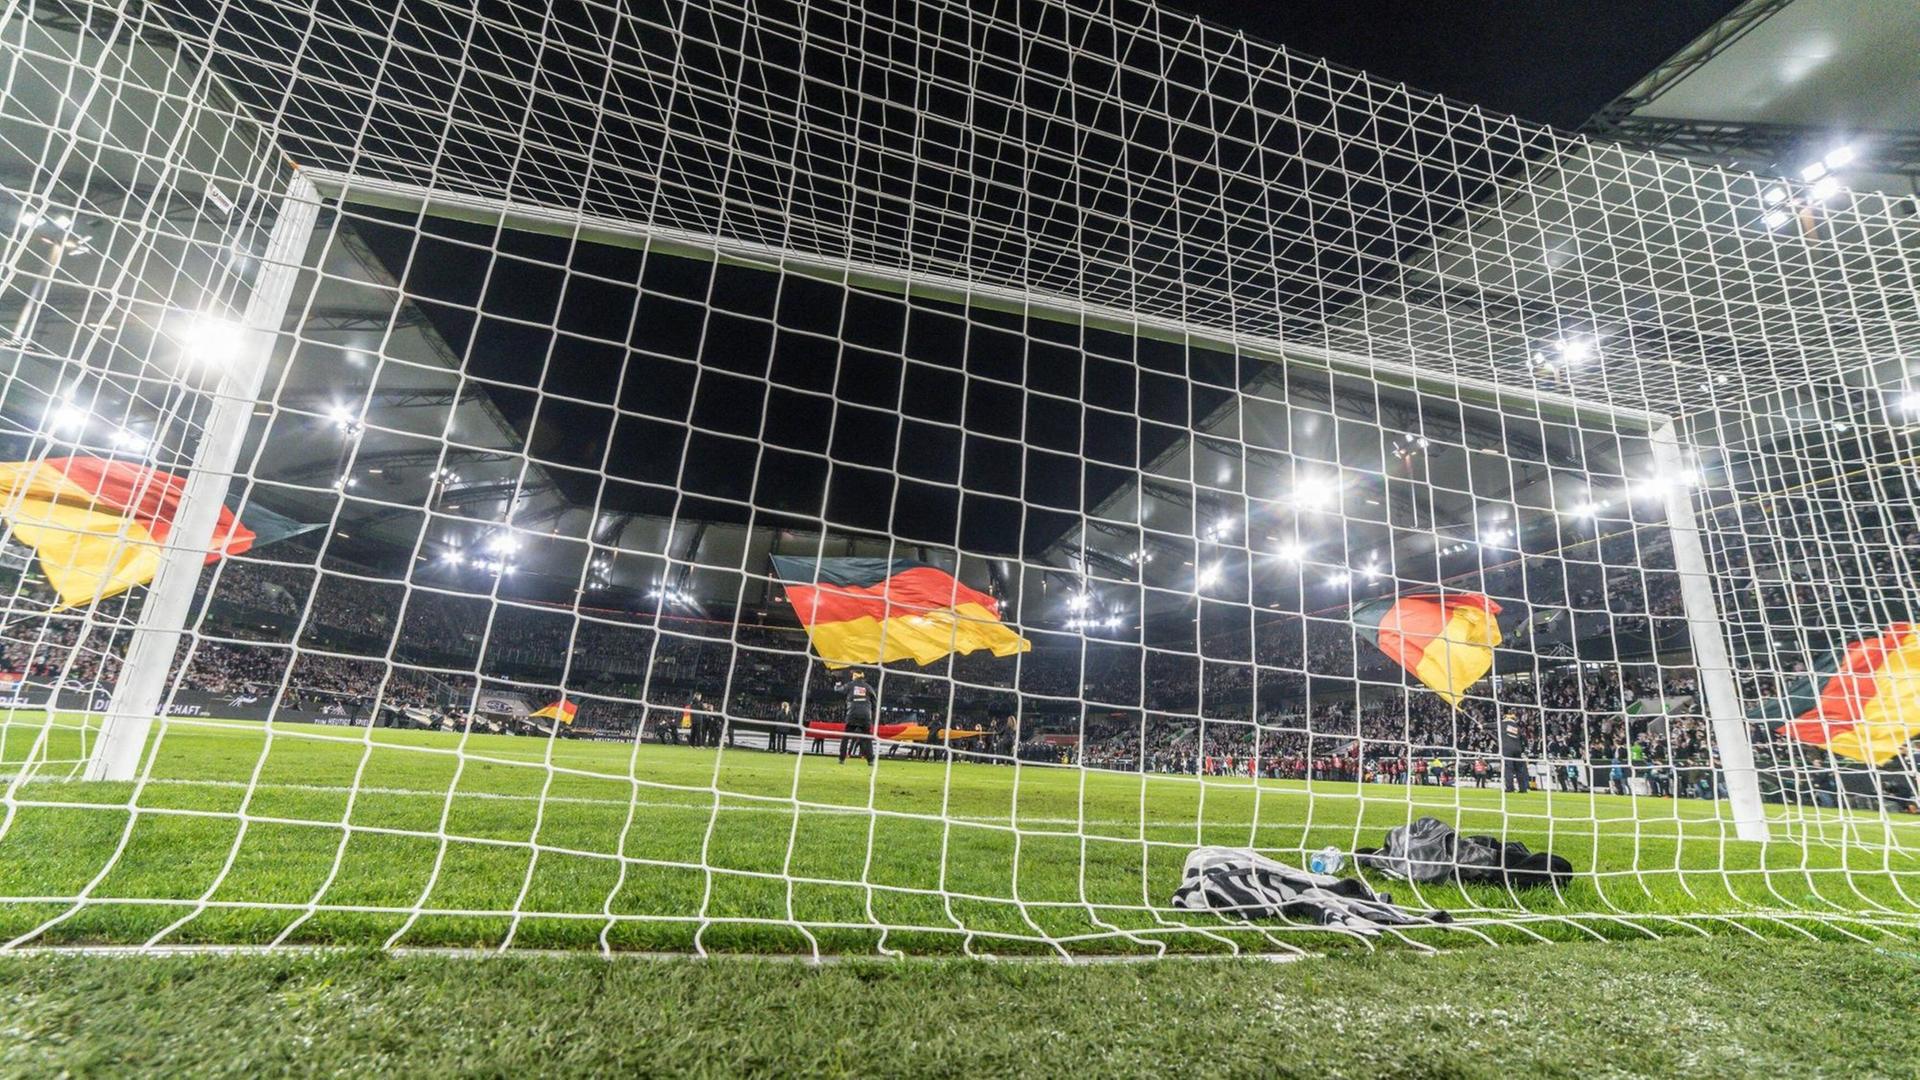 Blick auf das Spielfeld eines Fußballstadions durch ein Tornetz hindurch. Auf dem Rasen stehen vier Personen, die große Deutschlandflaggen schwenken.